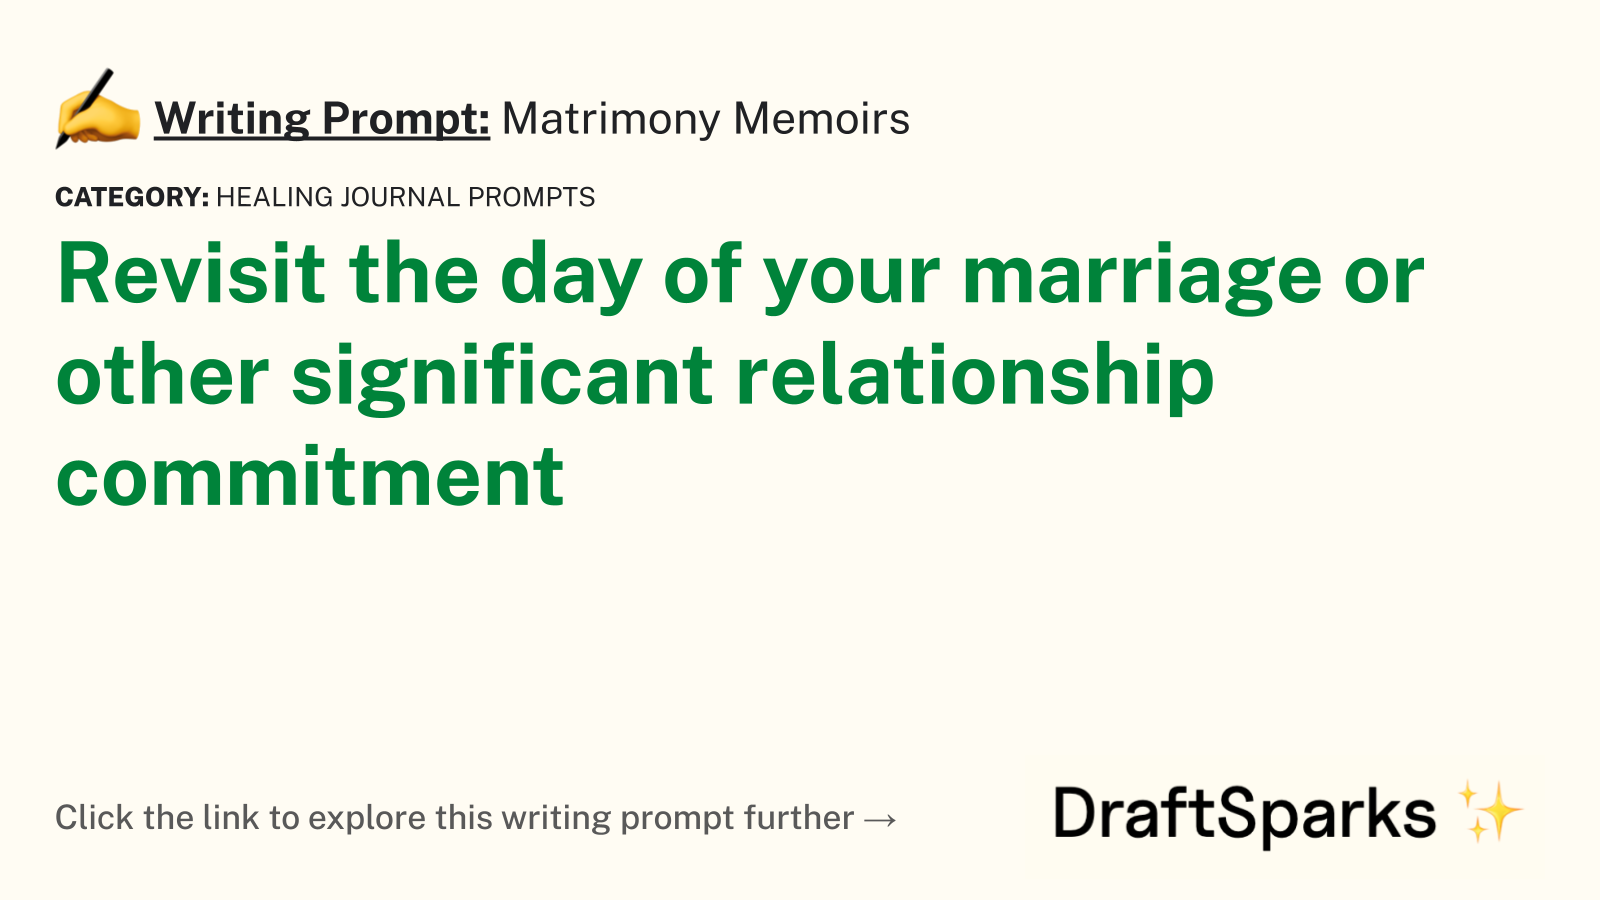 Matrimony Memoirs